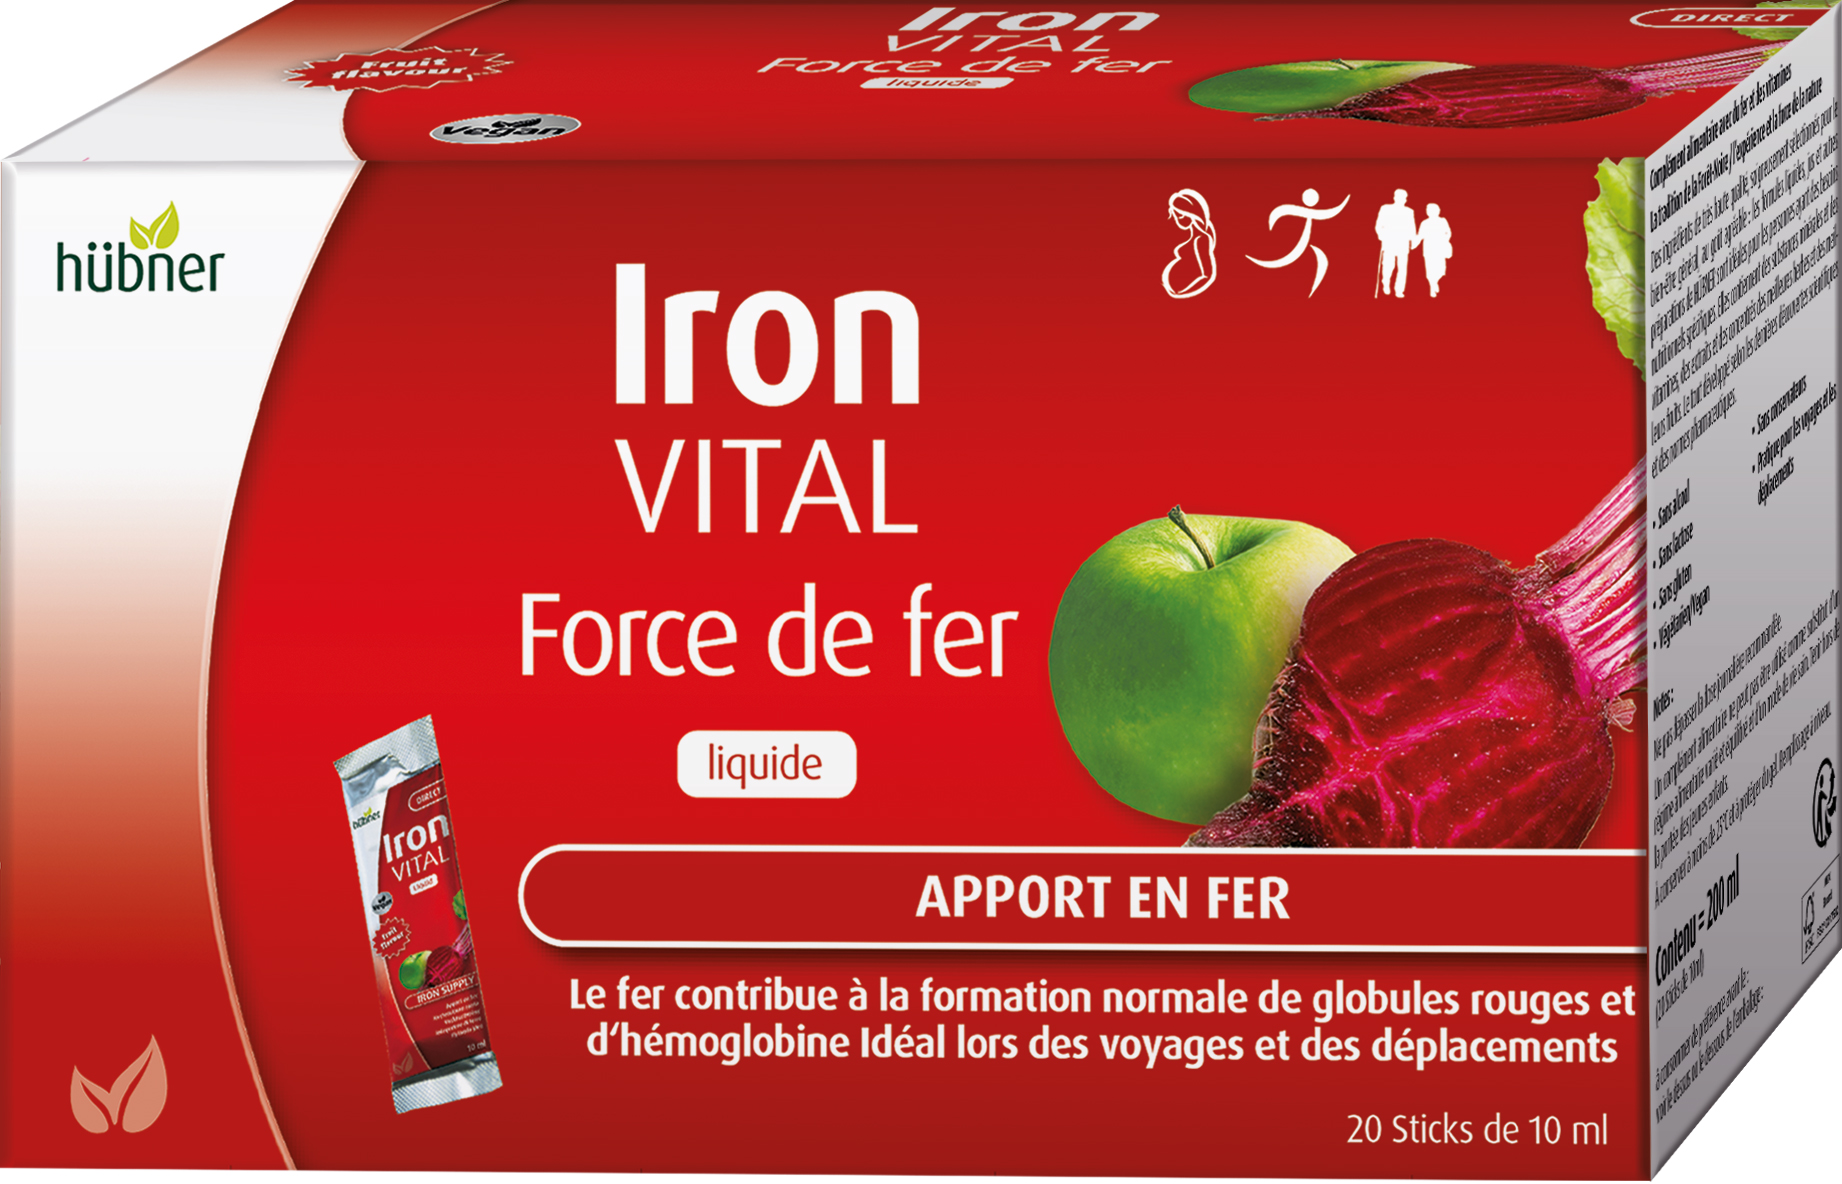 Hübner Iron VITAL (sachets) - Iron Vital - Force de fer Liquide (sachet)